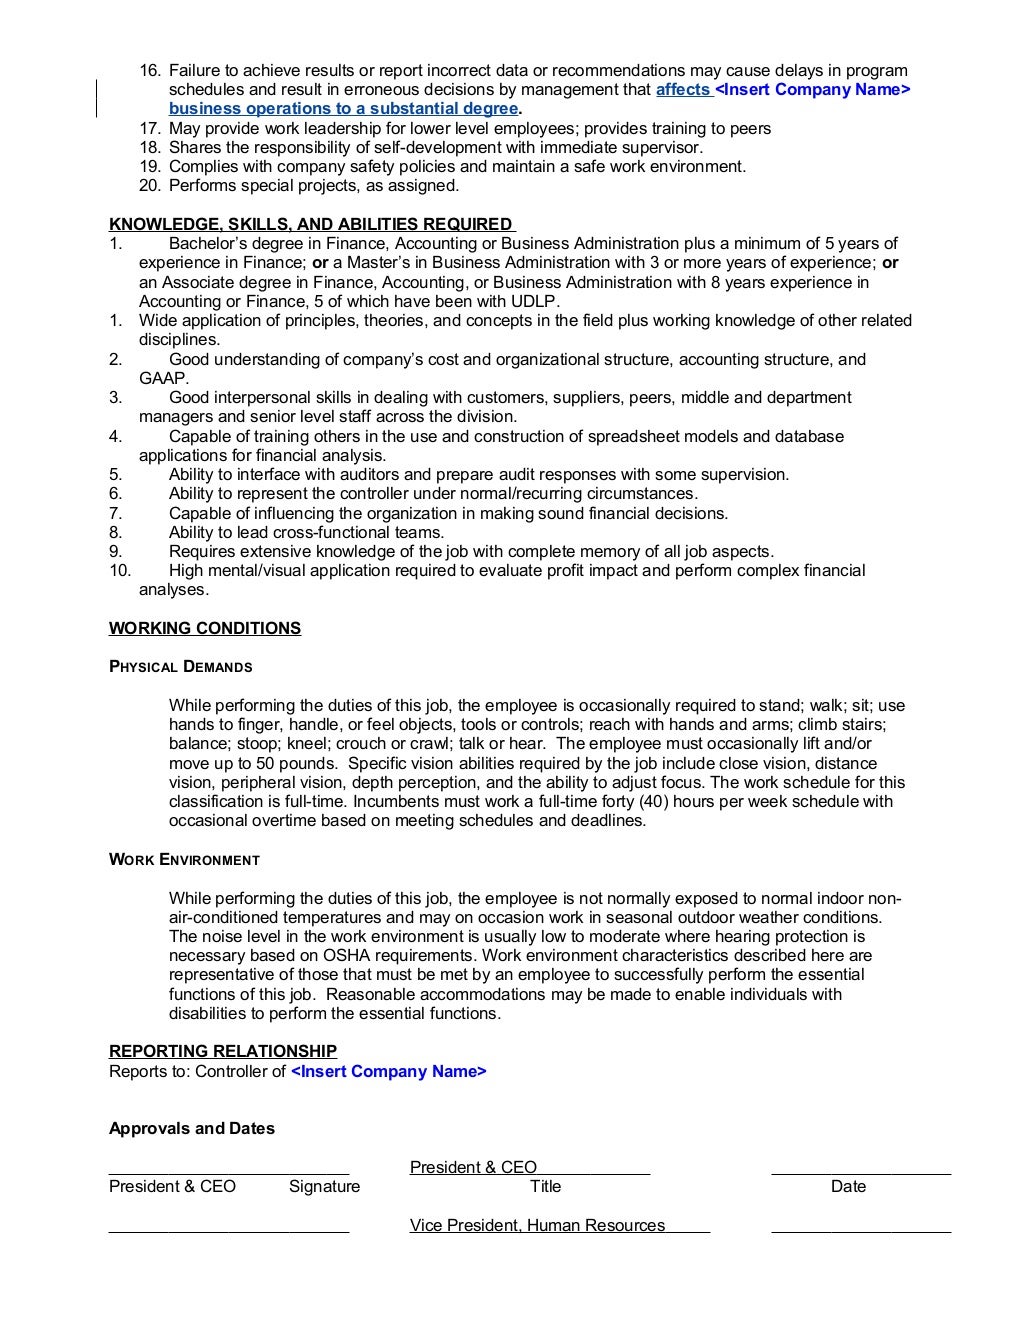 FLSA Administrative Exemption (Job Description Checklist)